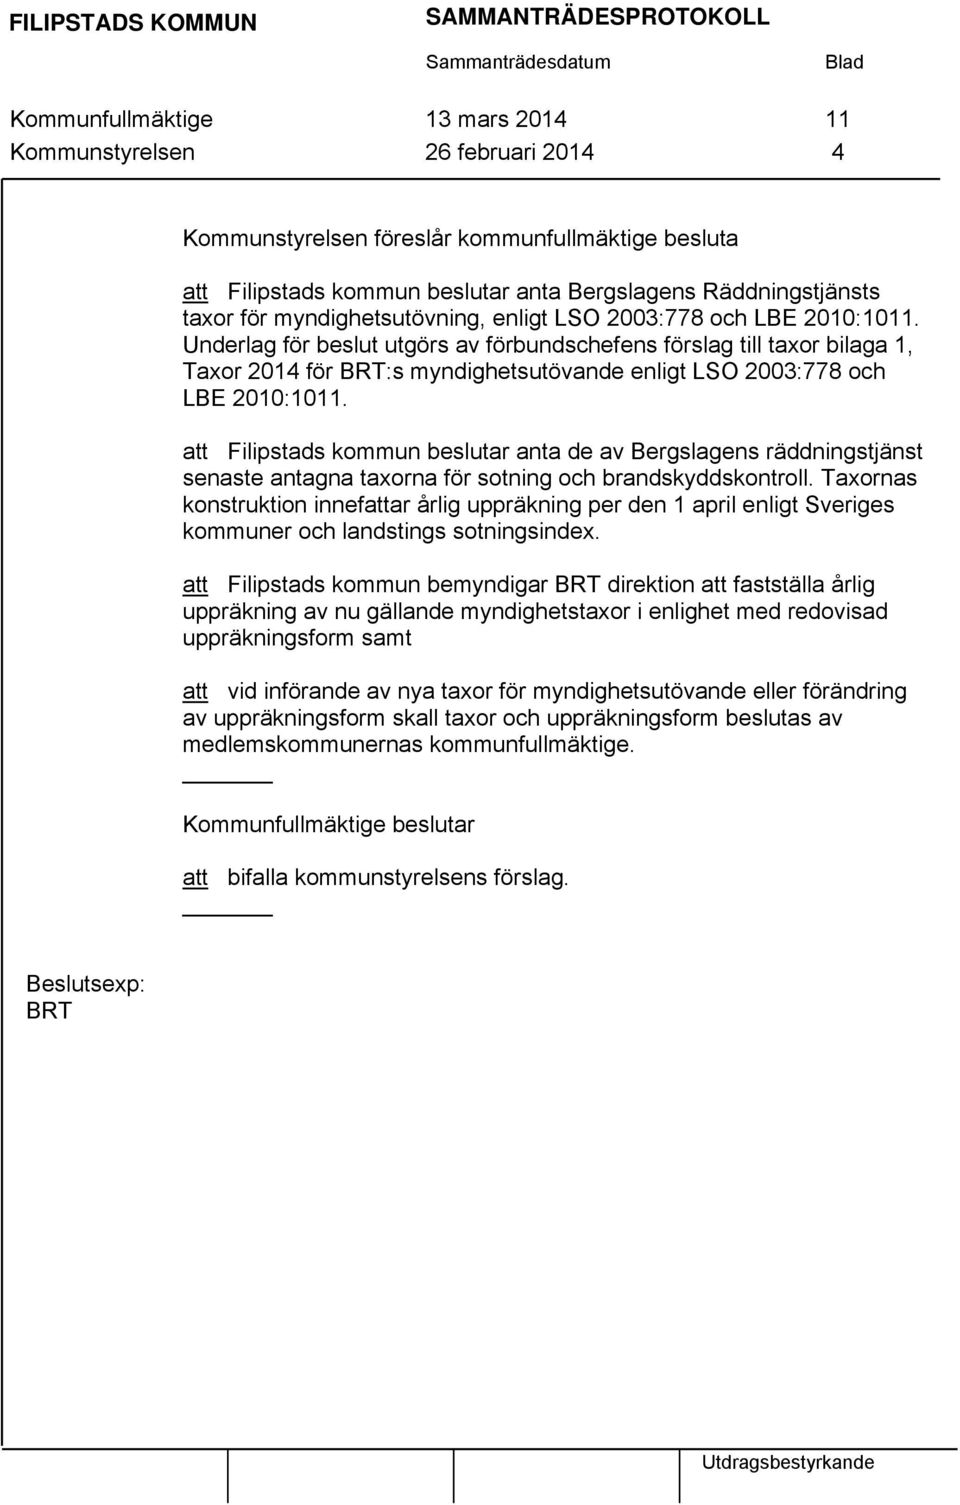 Underlag för beslut utgörs av förbundschefens förslag till taxor bilaga 1, Taxor 2014 för BRT:s myndighetsutövande enligt LSO 2003:778 och LBE 2010:1011.